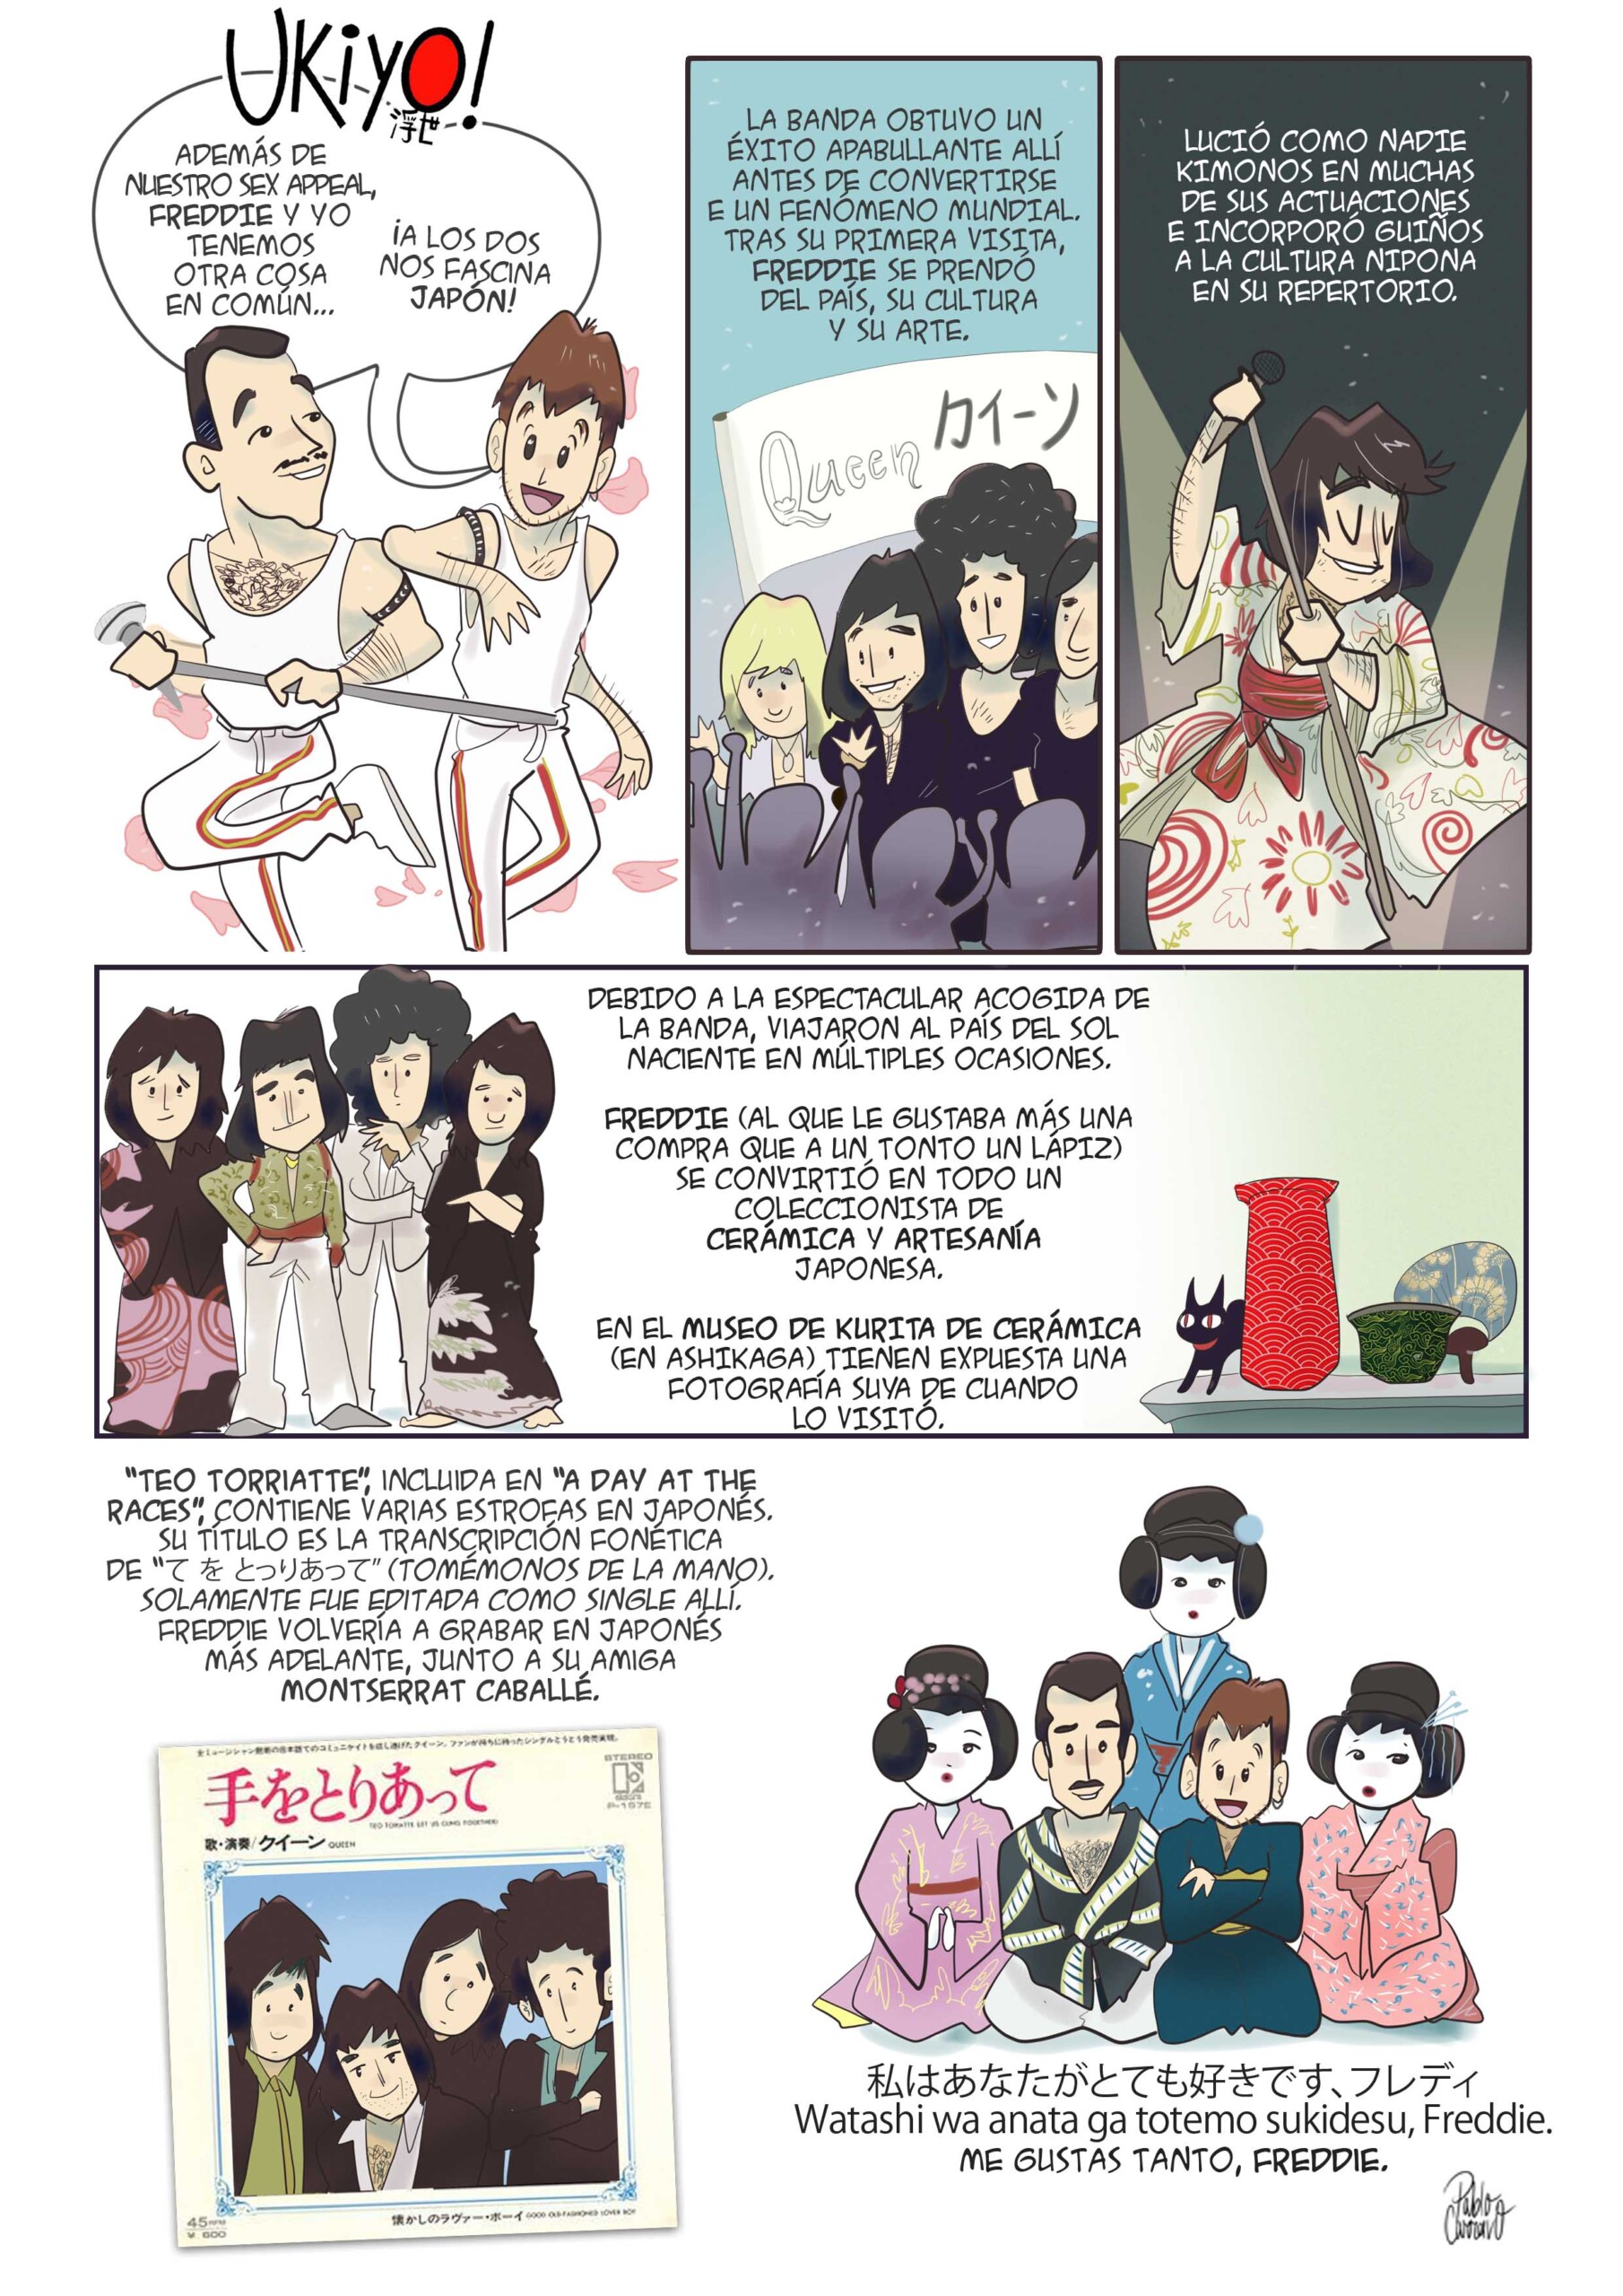 'Ukiyo!', un viaje de cómic al Japón más queer